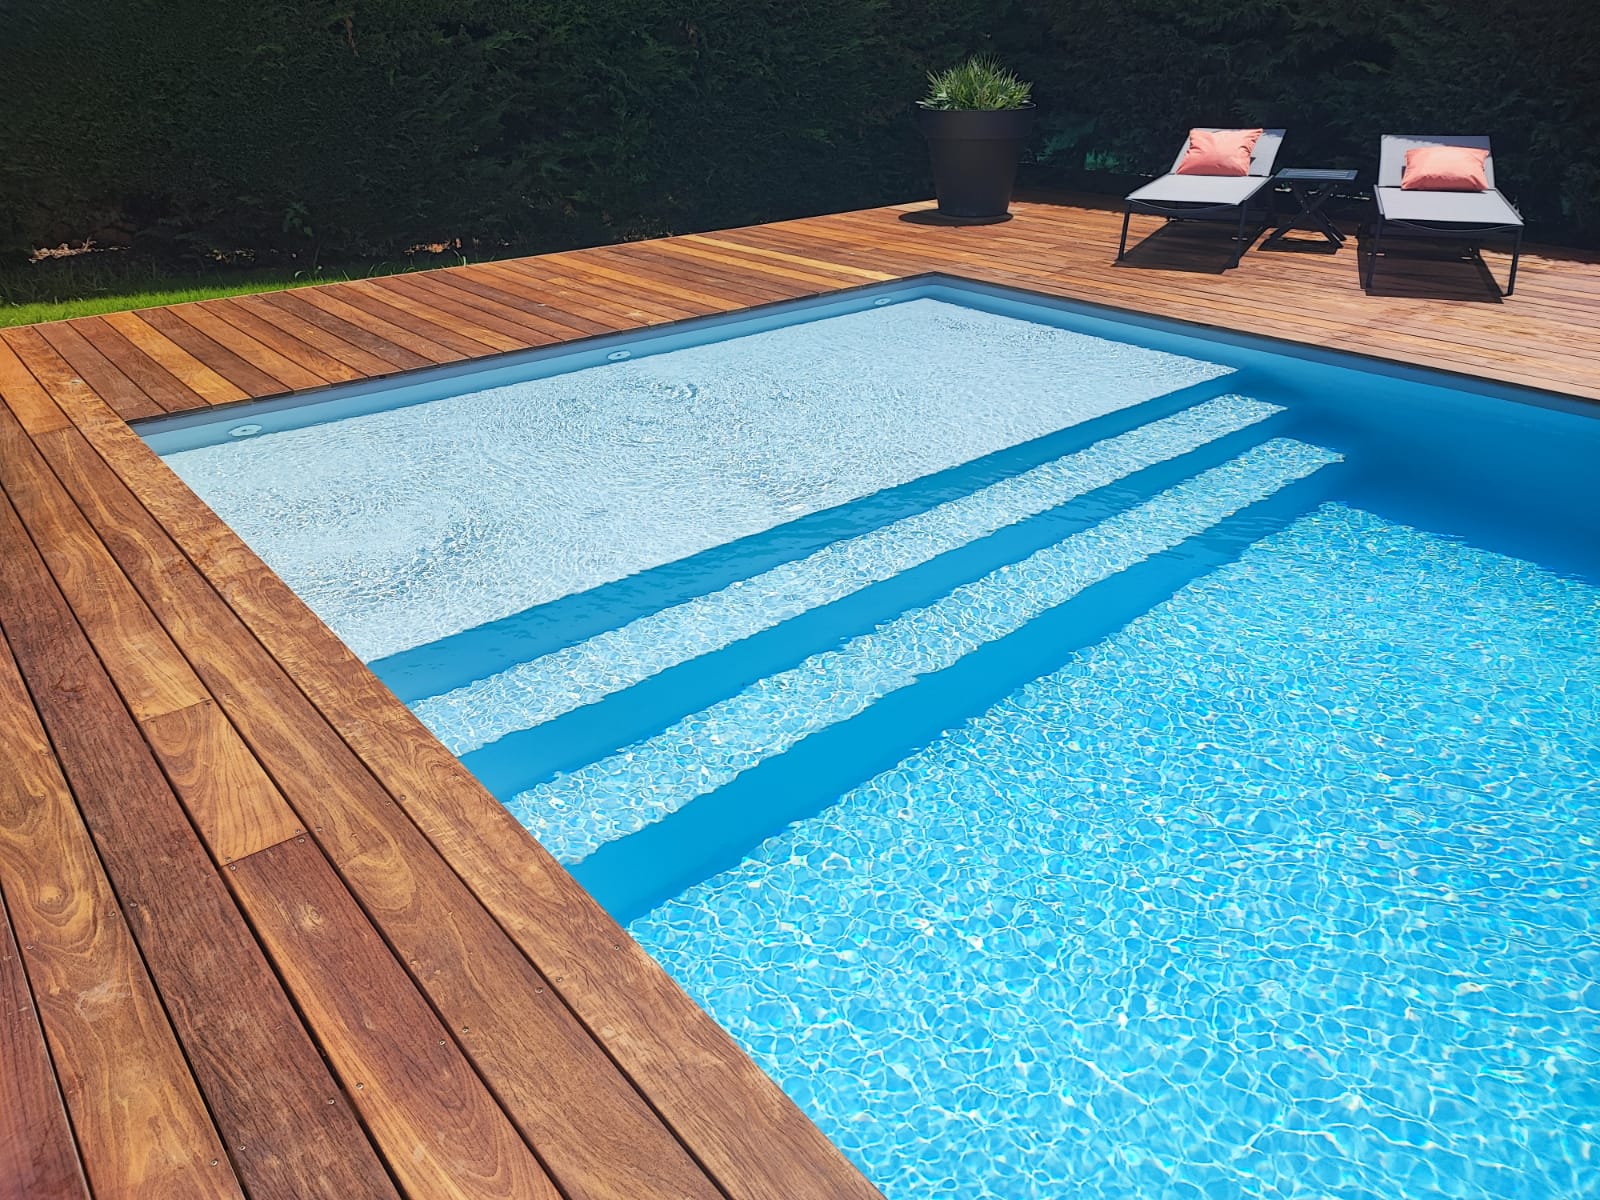 Quels sont les avantages et les inconvénients d’une piscine en aluminium ?